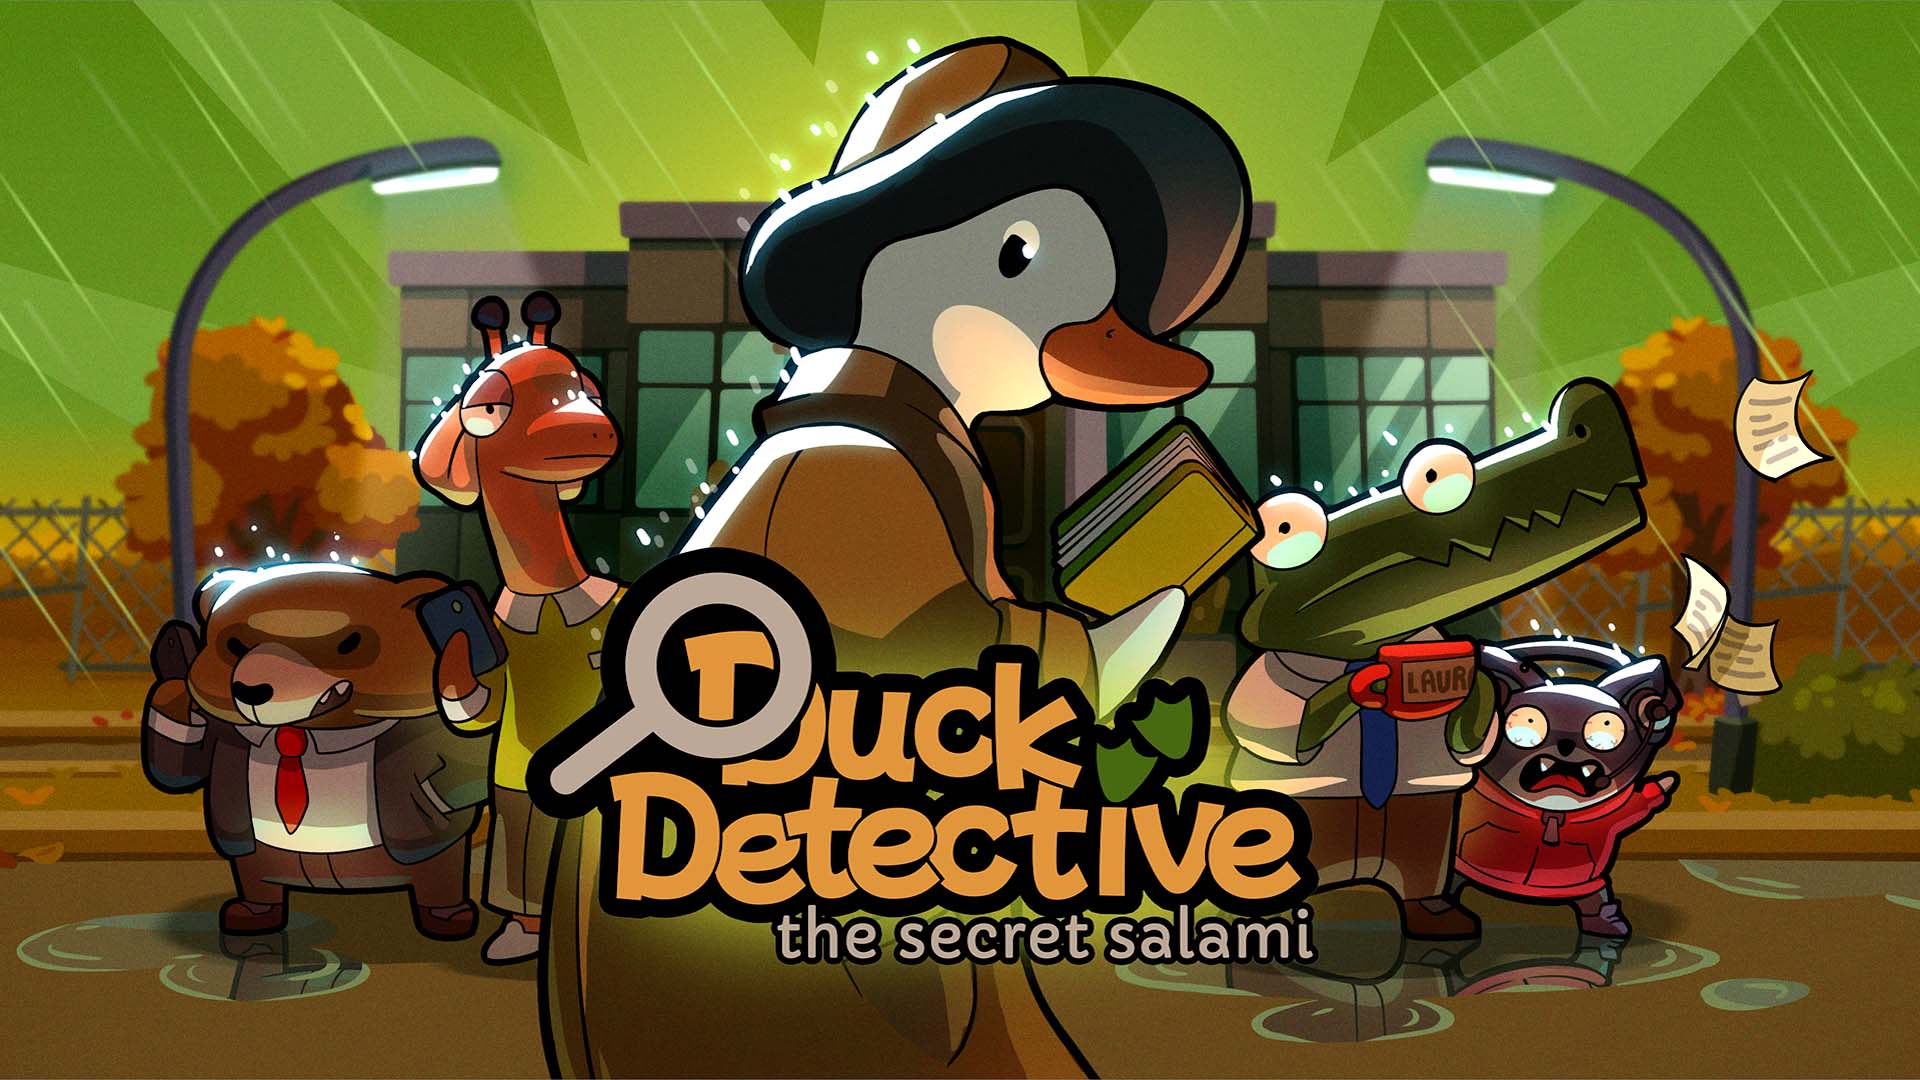 Használja ki csempészerejét a Duck Detective: The Secret Salami című filmben